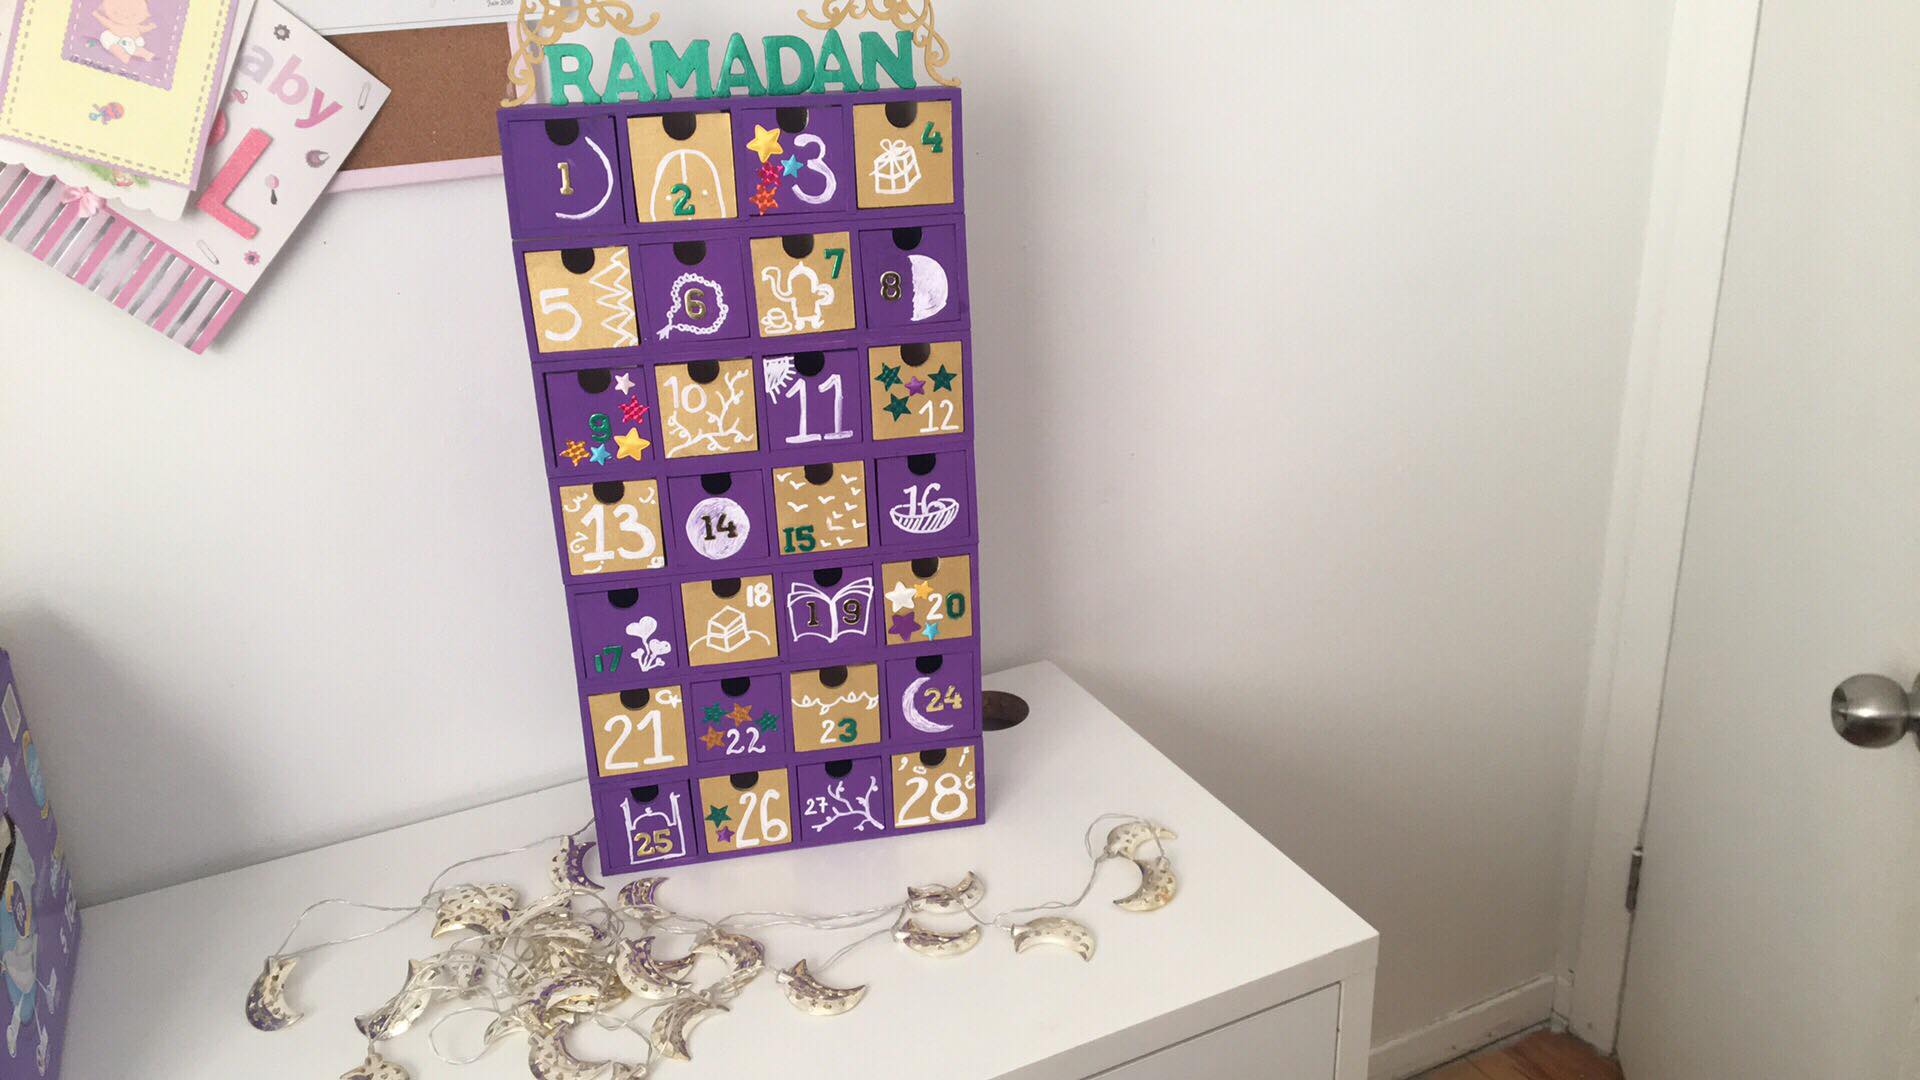 faire une conception de calendrier de l'avent pour le ramadan